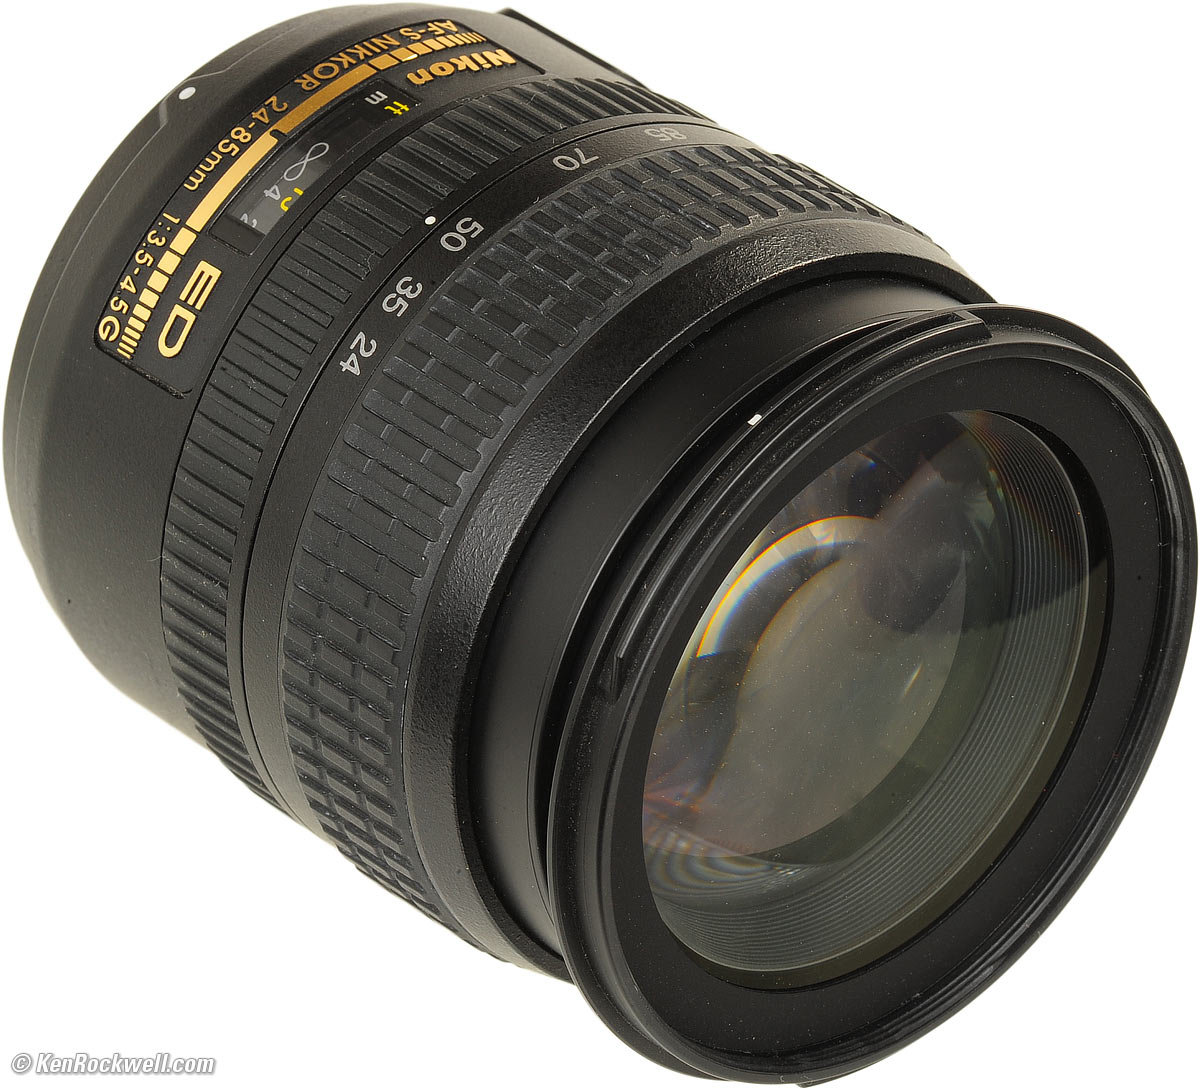 カメラ レンズ(ズーム) Nikon 24-85mm AF-S G Review